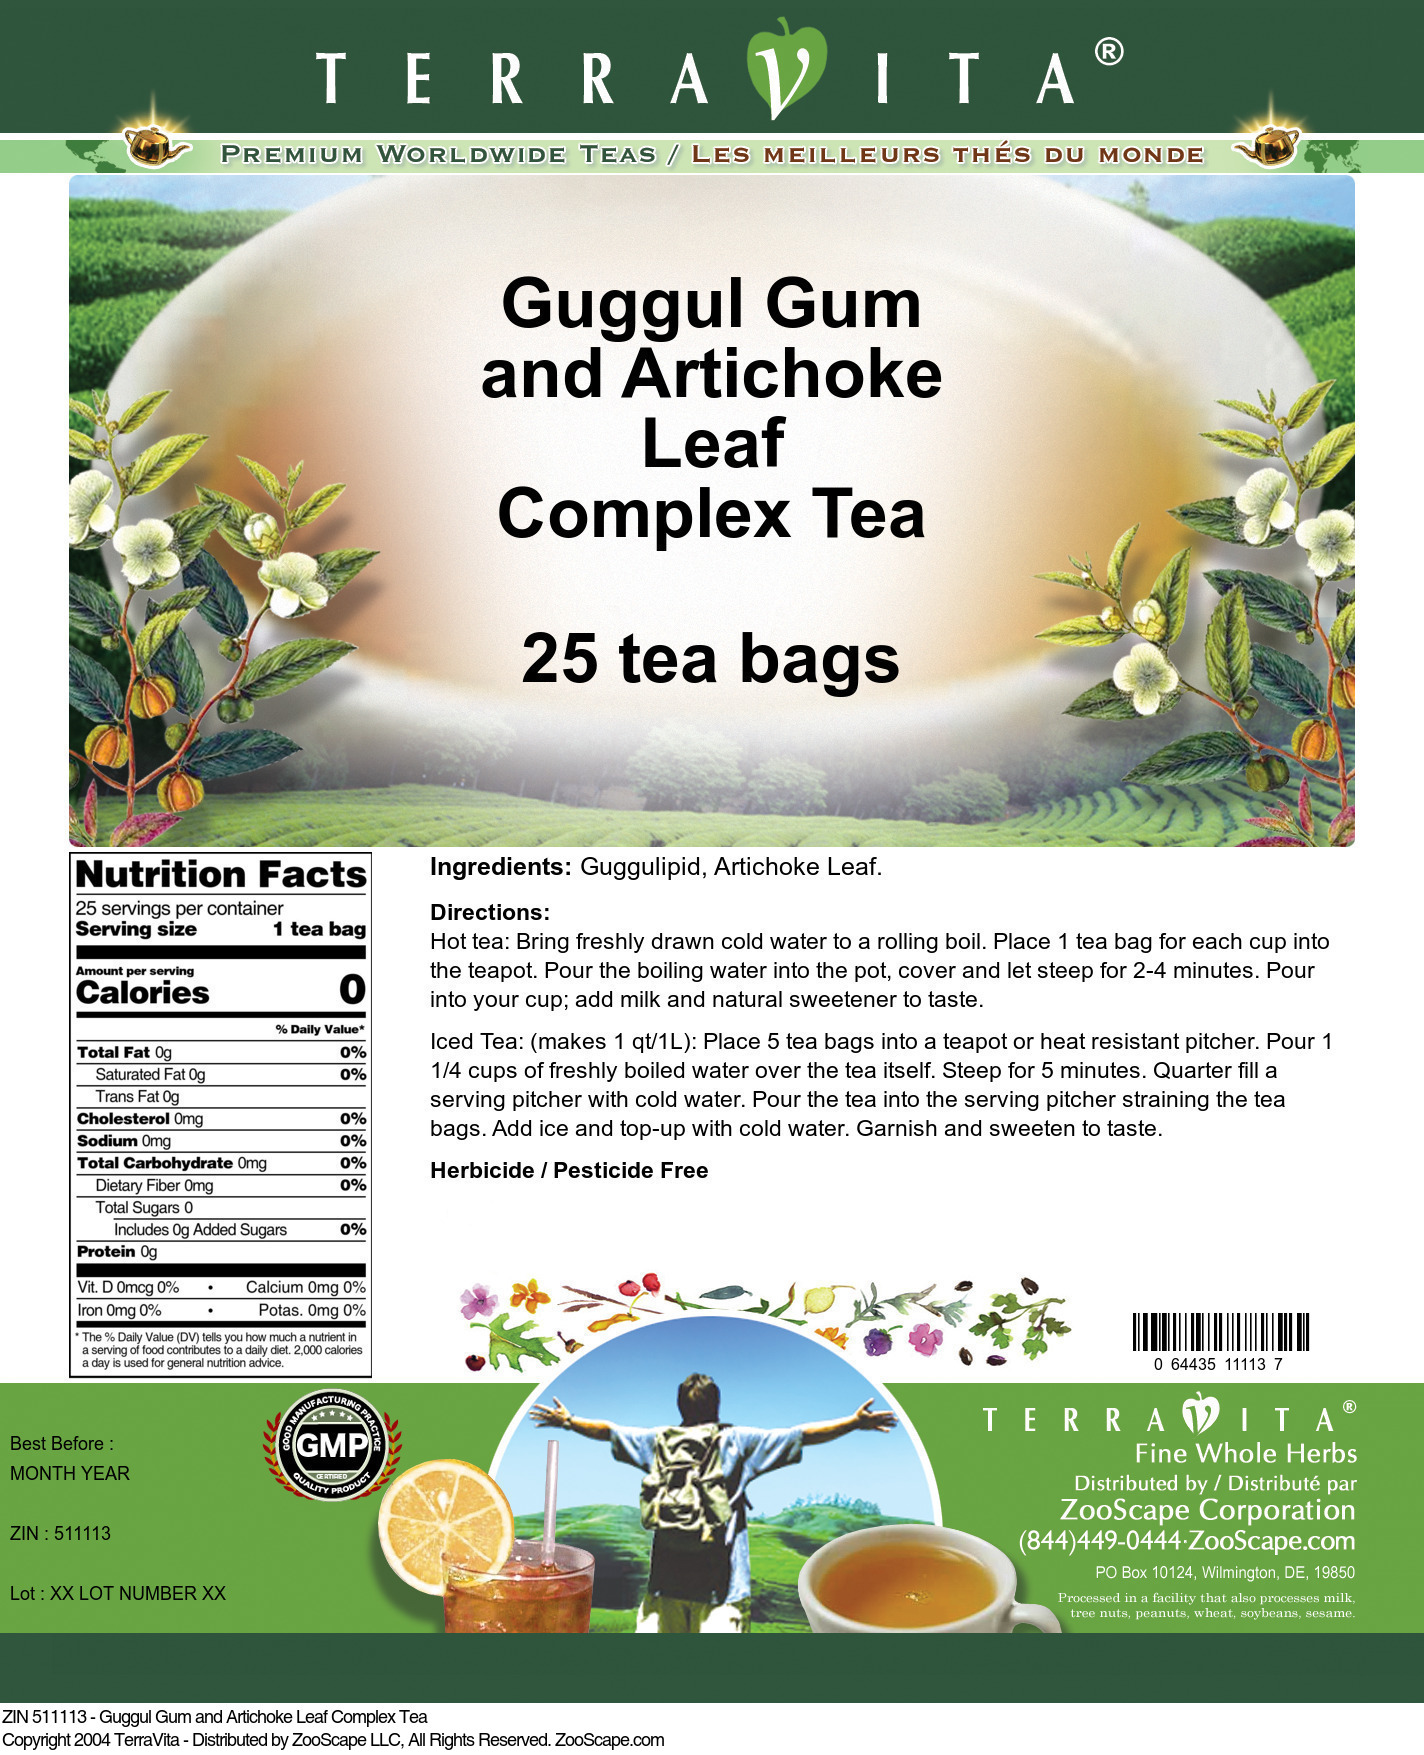 Guggul Gum and Artichoke Leaf Complex Tea - Label